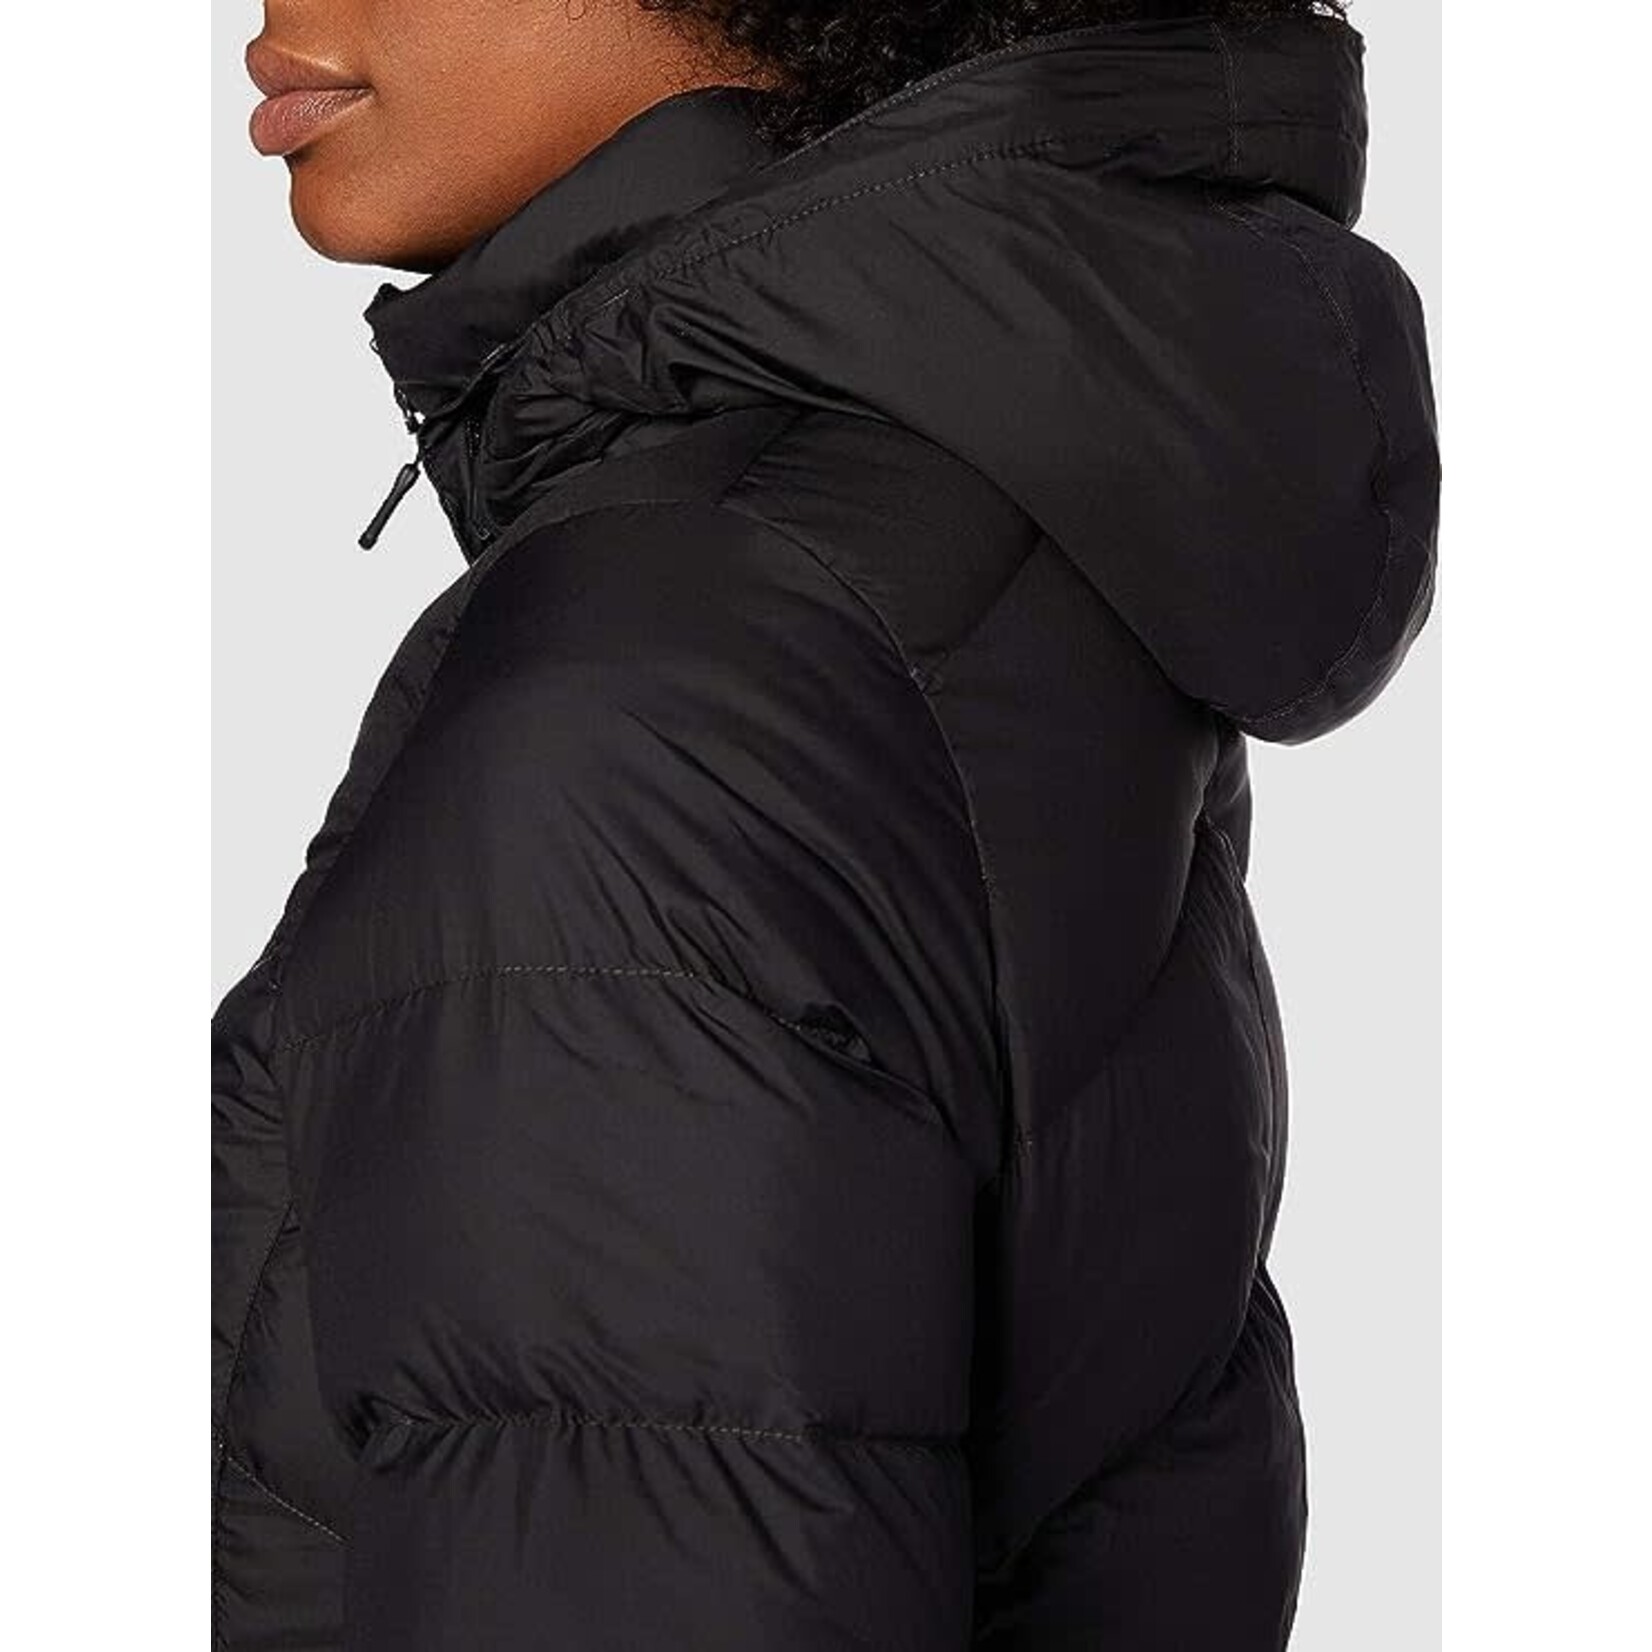 Marmot Manteau Wm's Montreux Coat pour femme